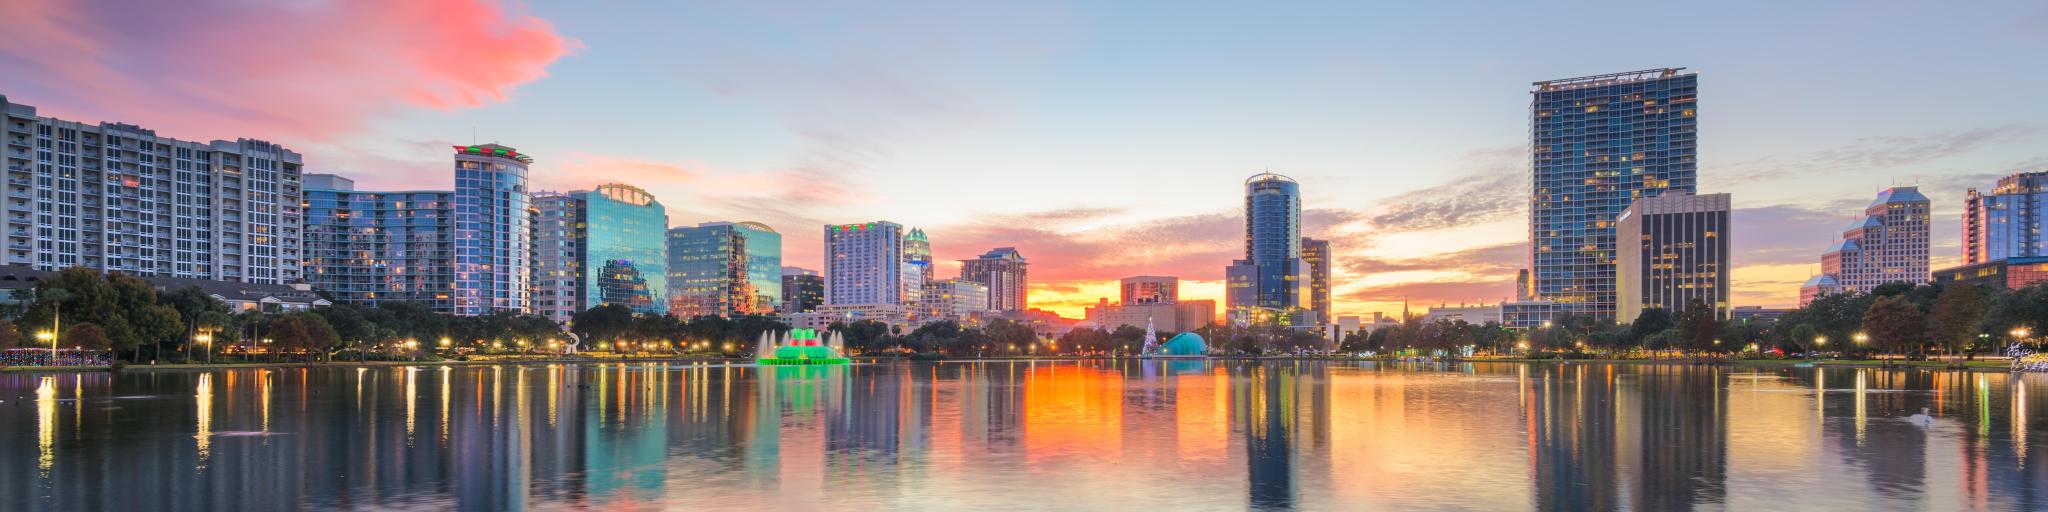 Orlando, Florida, USA downtown city skyline from Eola Park at dusk.